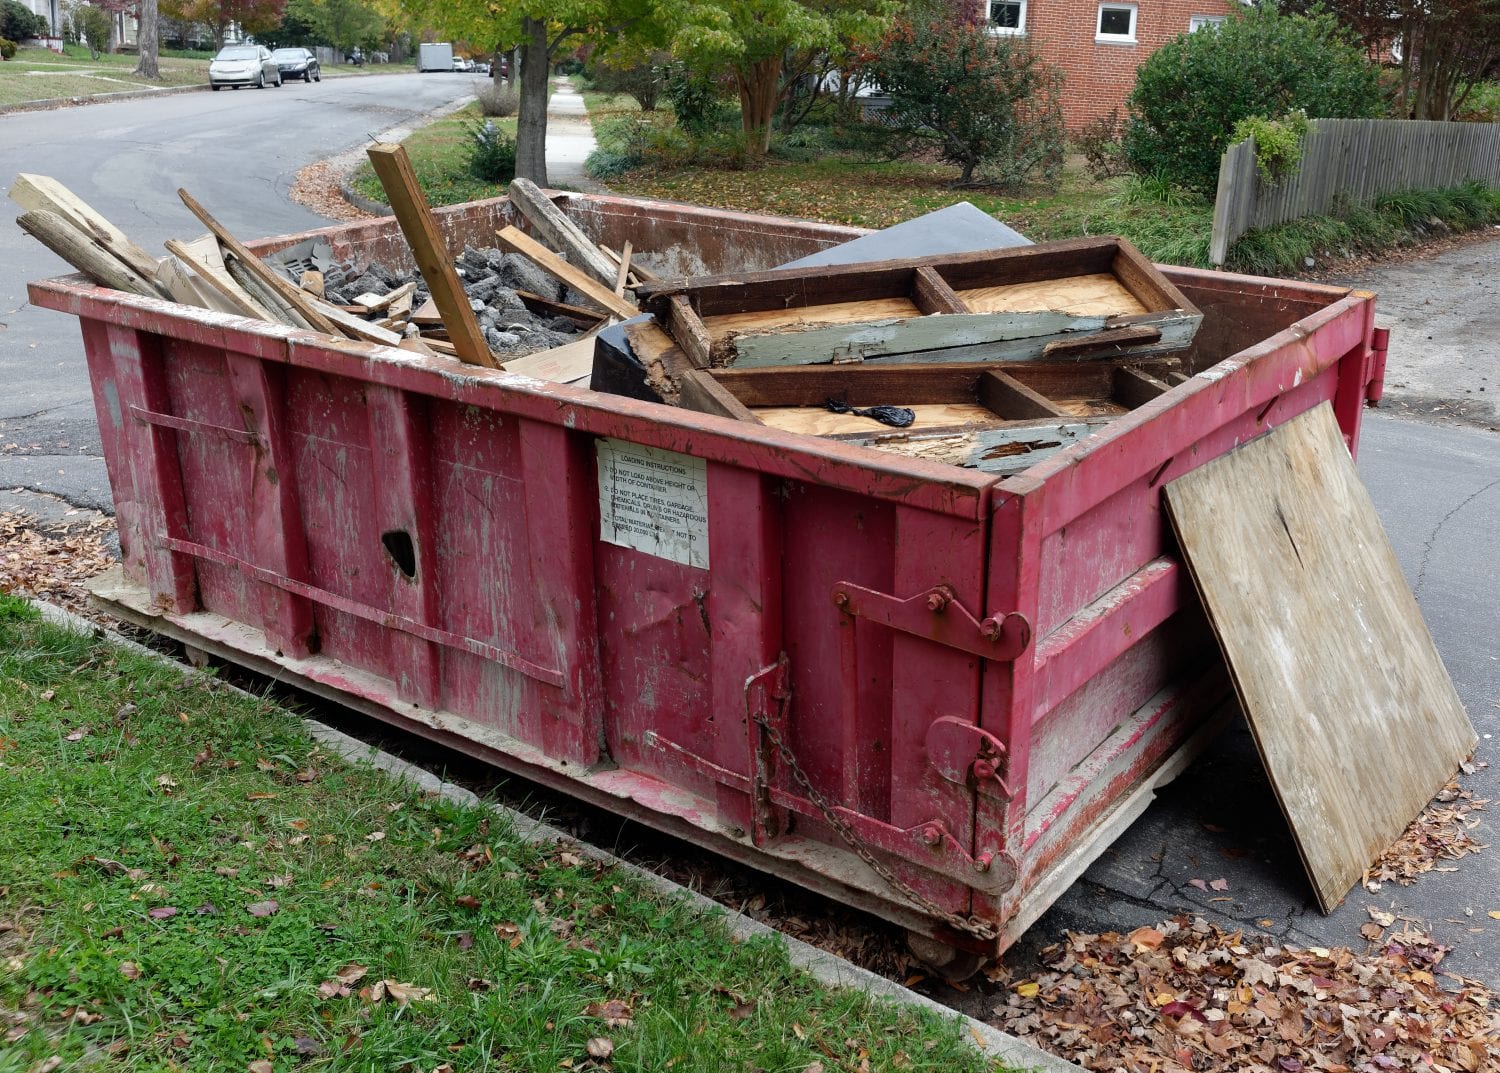 Property Cleanup Dumpster Services-Loveland’s Elite Dumpster Rental & Roll Off Services